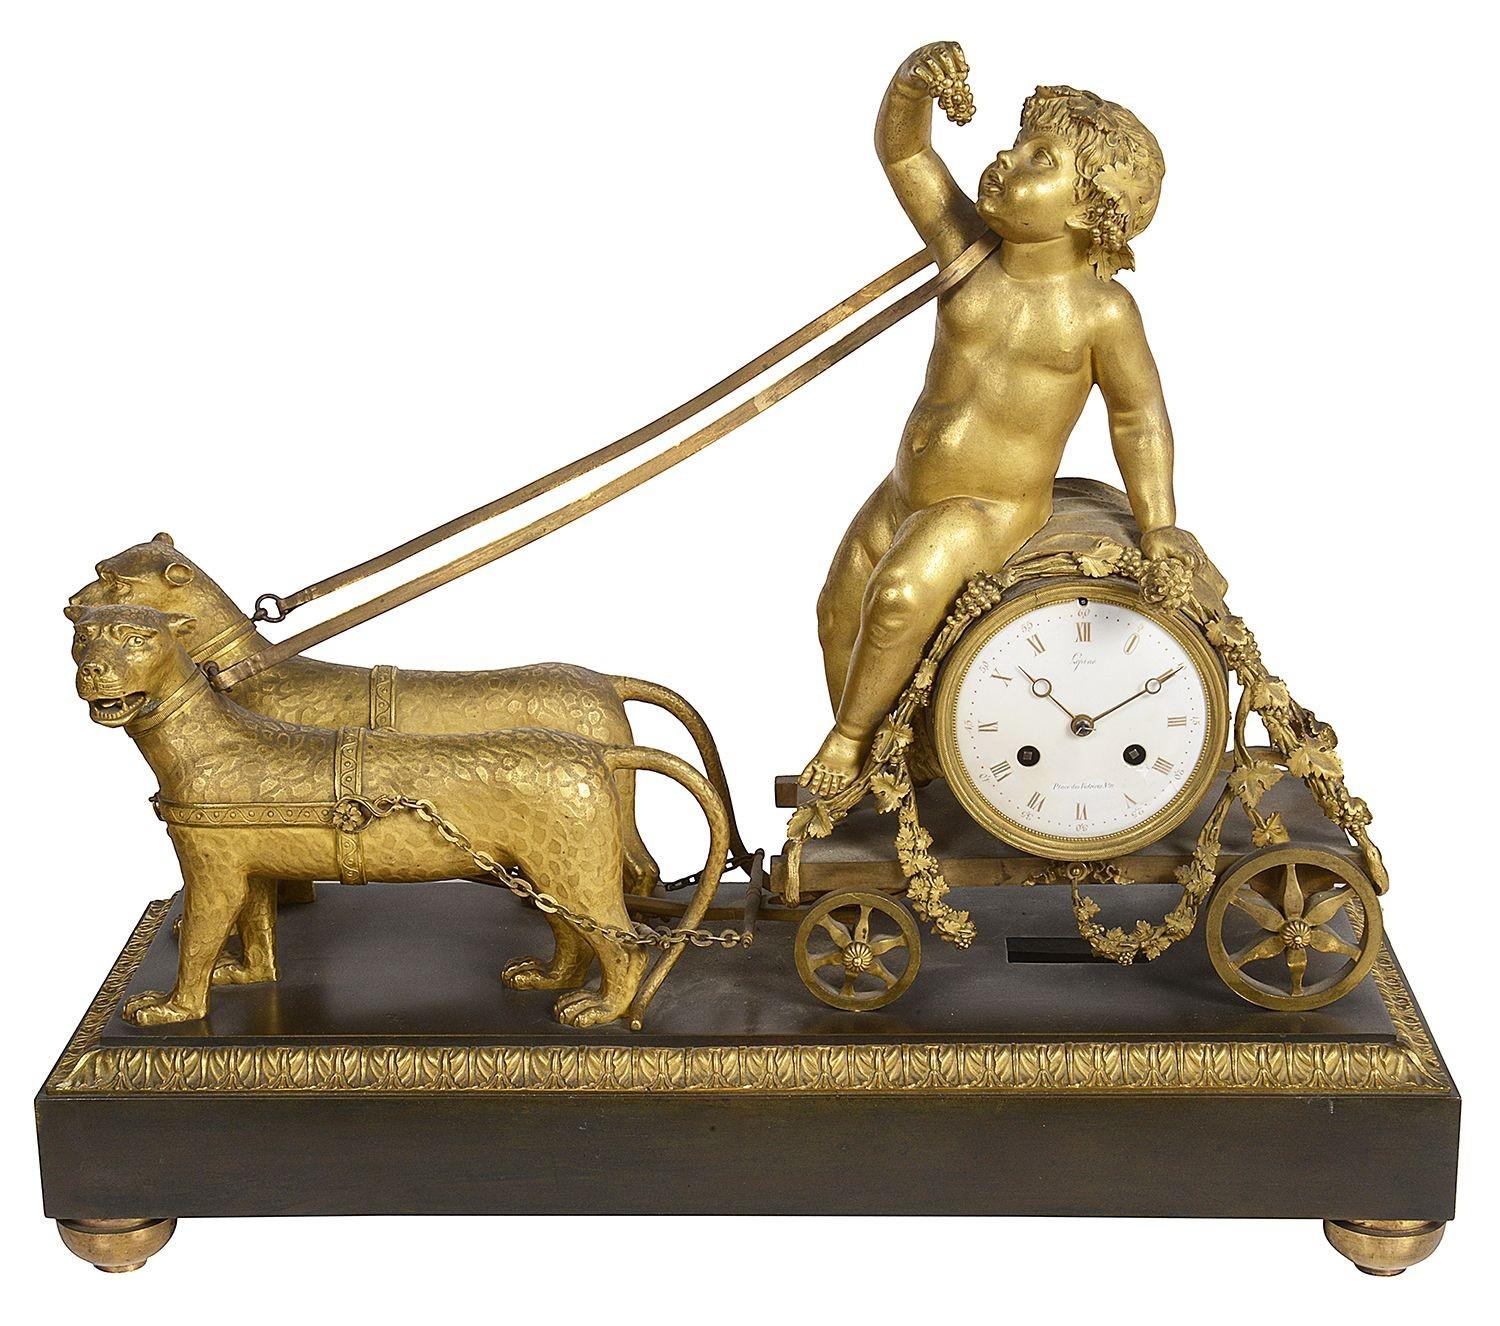 Eine wunderbar beeindruckende und bezaubernde französische Empire-Stiluhr von Jean-Antoine Lépine (1720-1814), dem Uhrmacher von König Ludwig XV. und Ludwig XVI. 
Darstellung eines Leopardenpaars, das ein Puttenpaar zieht, das auf einem mit